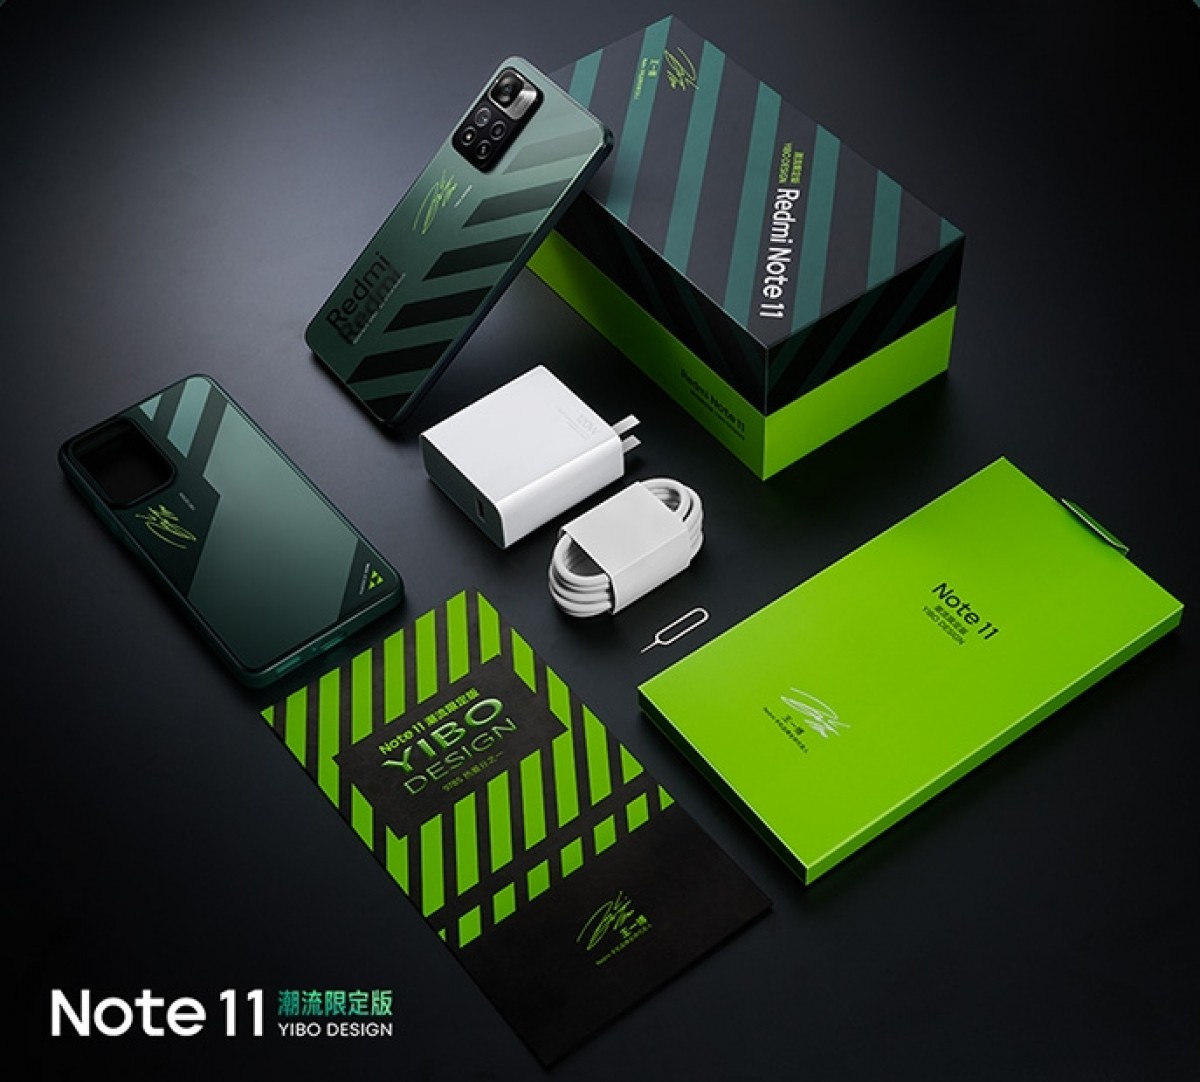 Redmi Note 11 Pro+ dostaje specjalną wersję Yibo Design za 420 dolarów